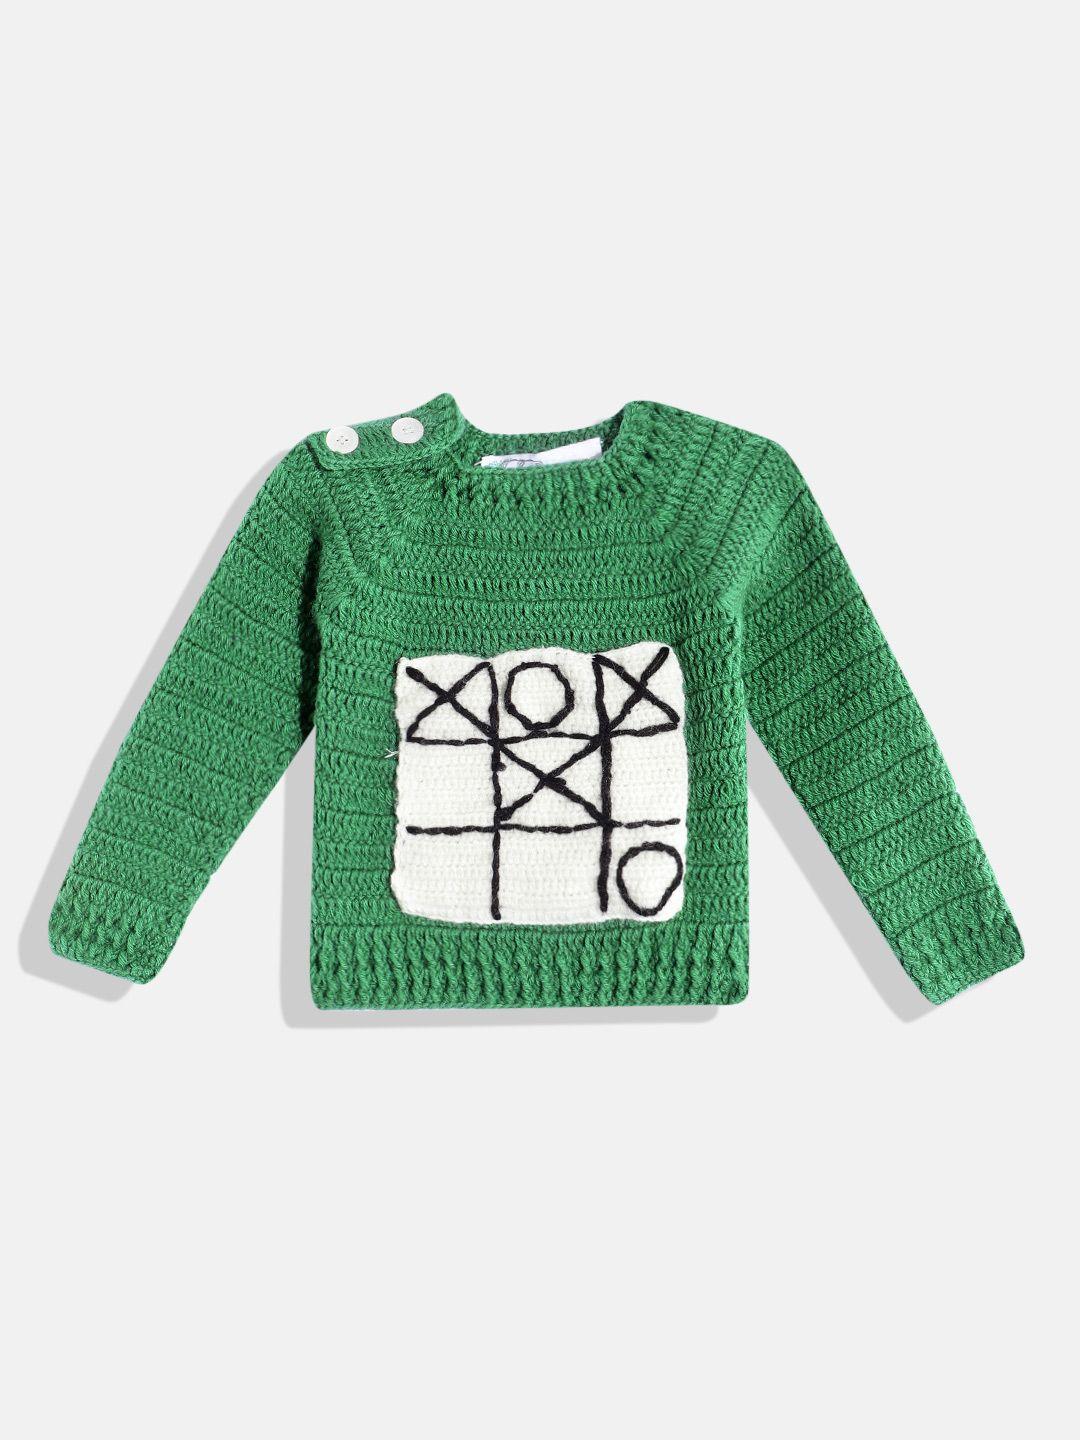 chutput kids geometric crochet woollen pullover